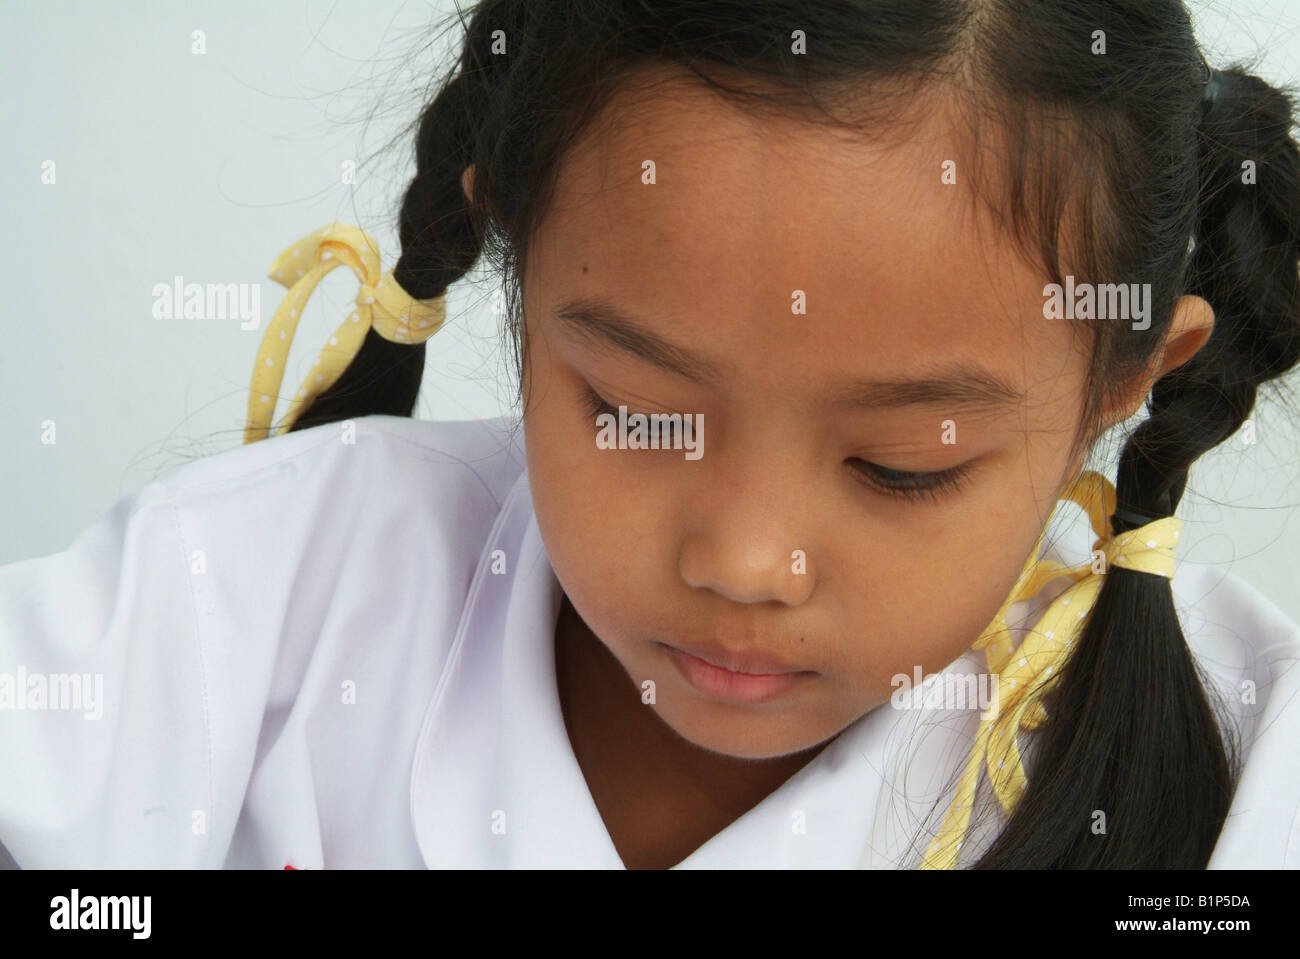 Portrait de Thai girl 8 ans dans l'uniforme scolaire Banque D'Images